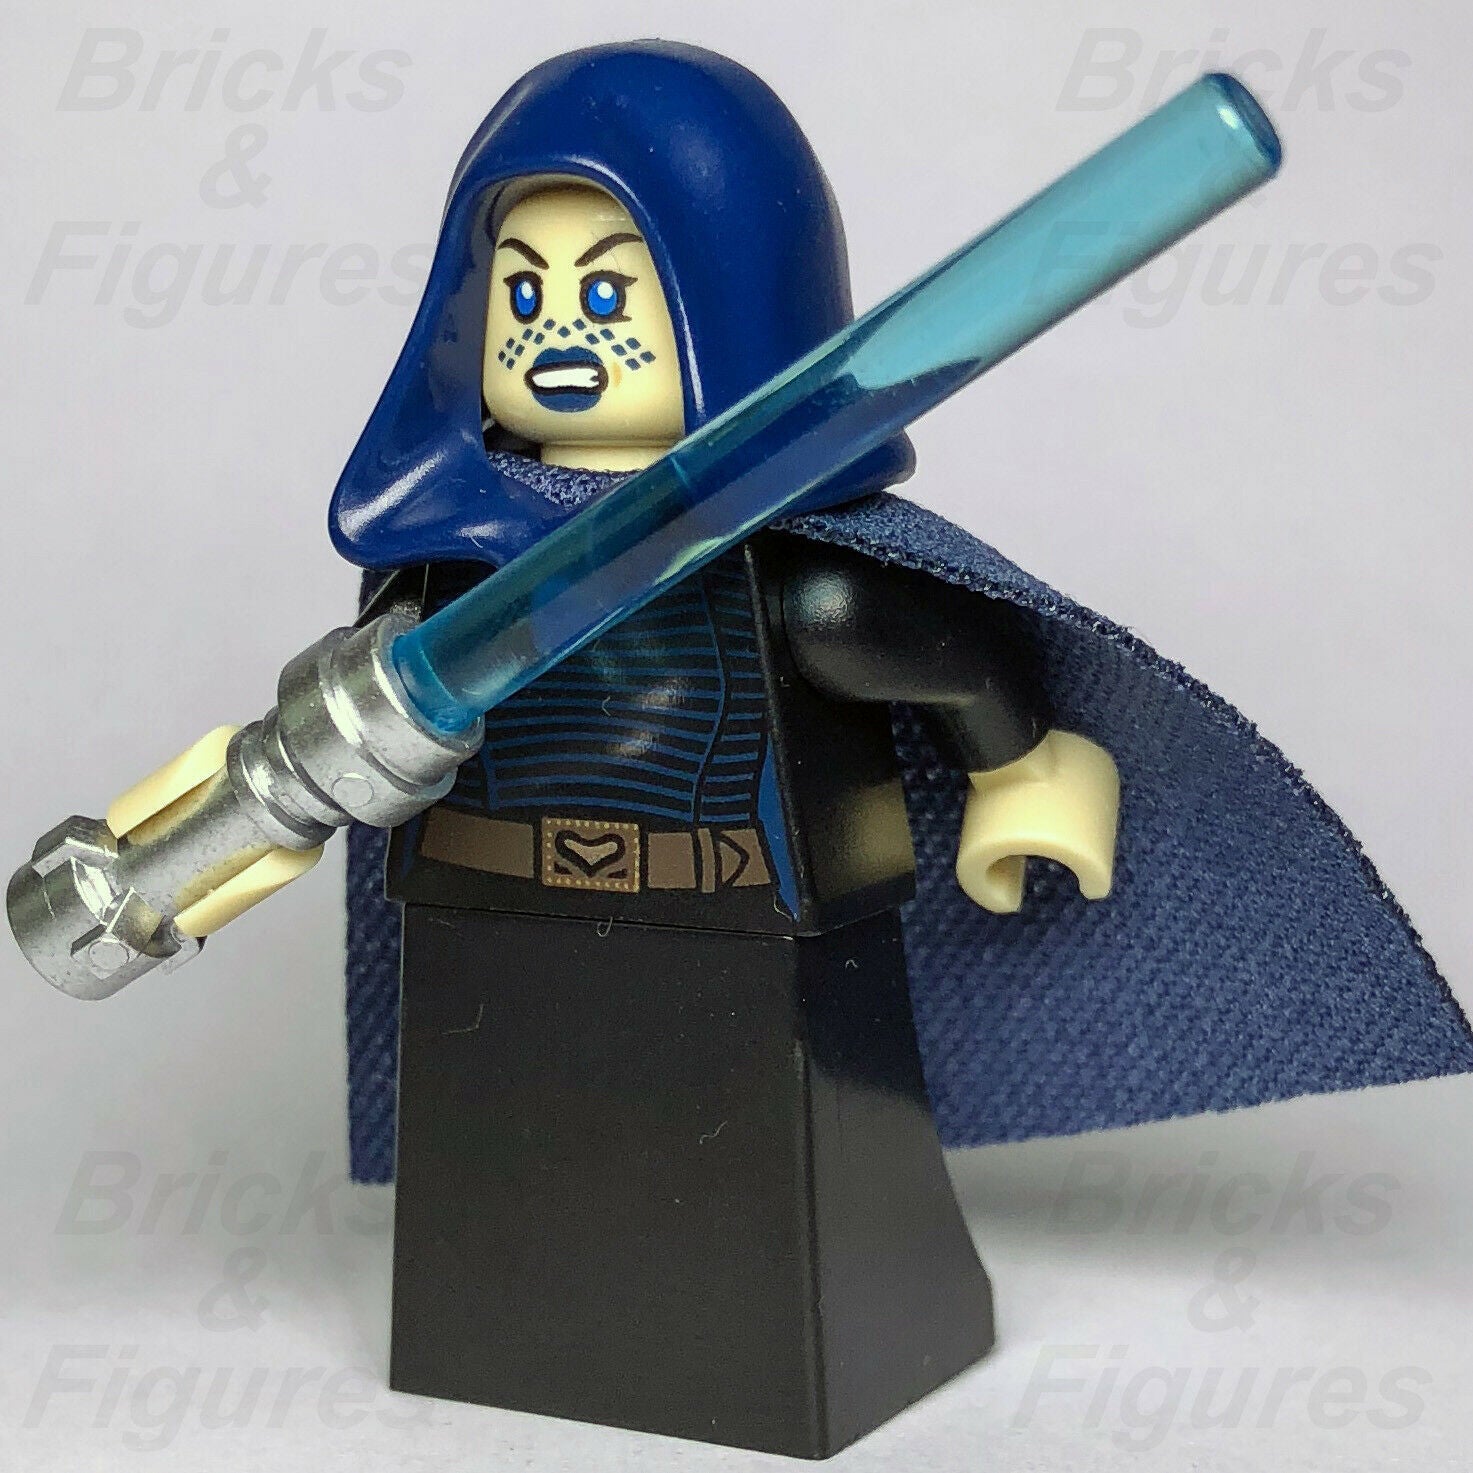 New Star Wars LEGO Barriss Offee Jedi Padawan Clone Wars Minifigure 75206 - Bricks & Figures